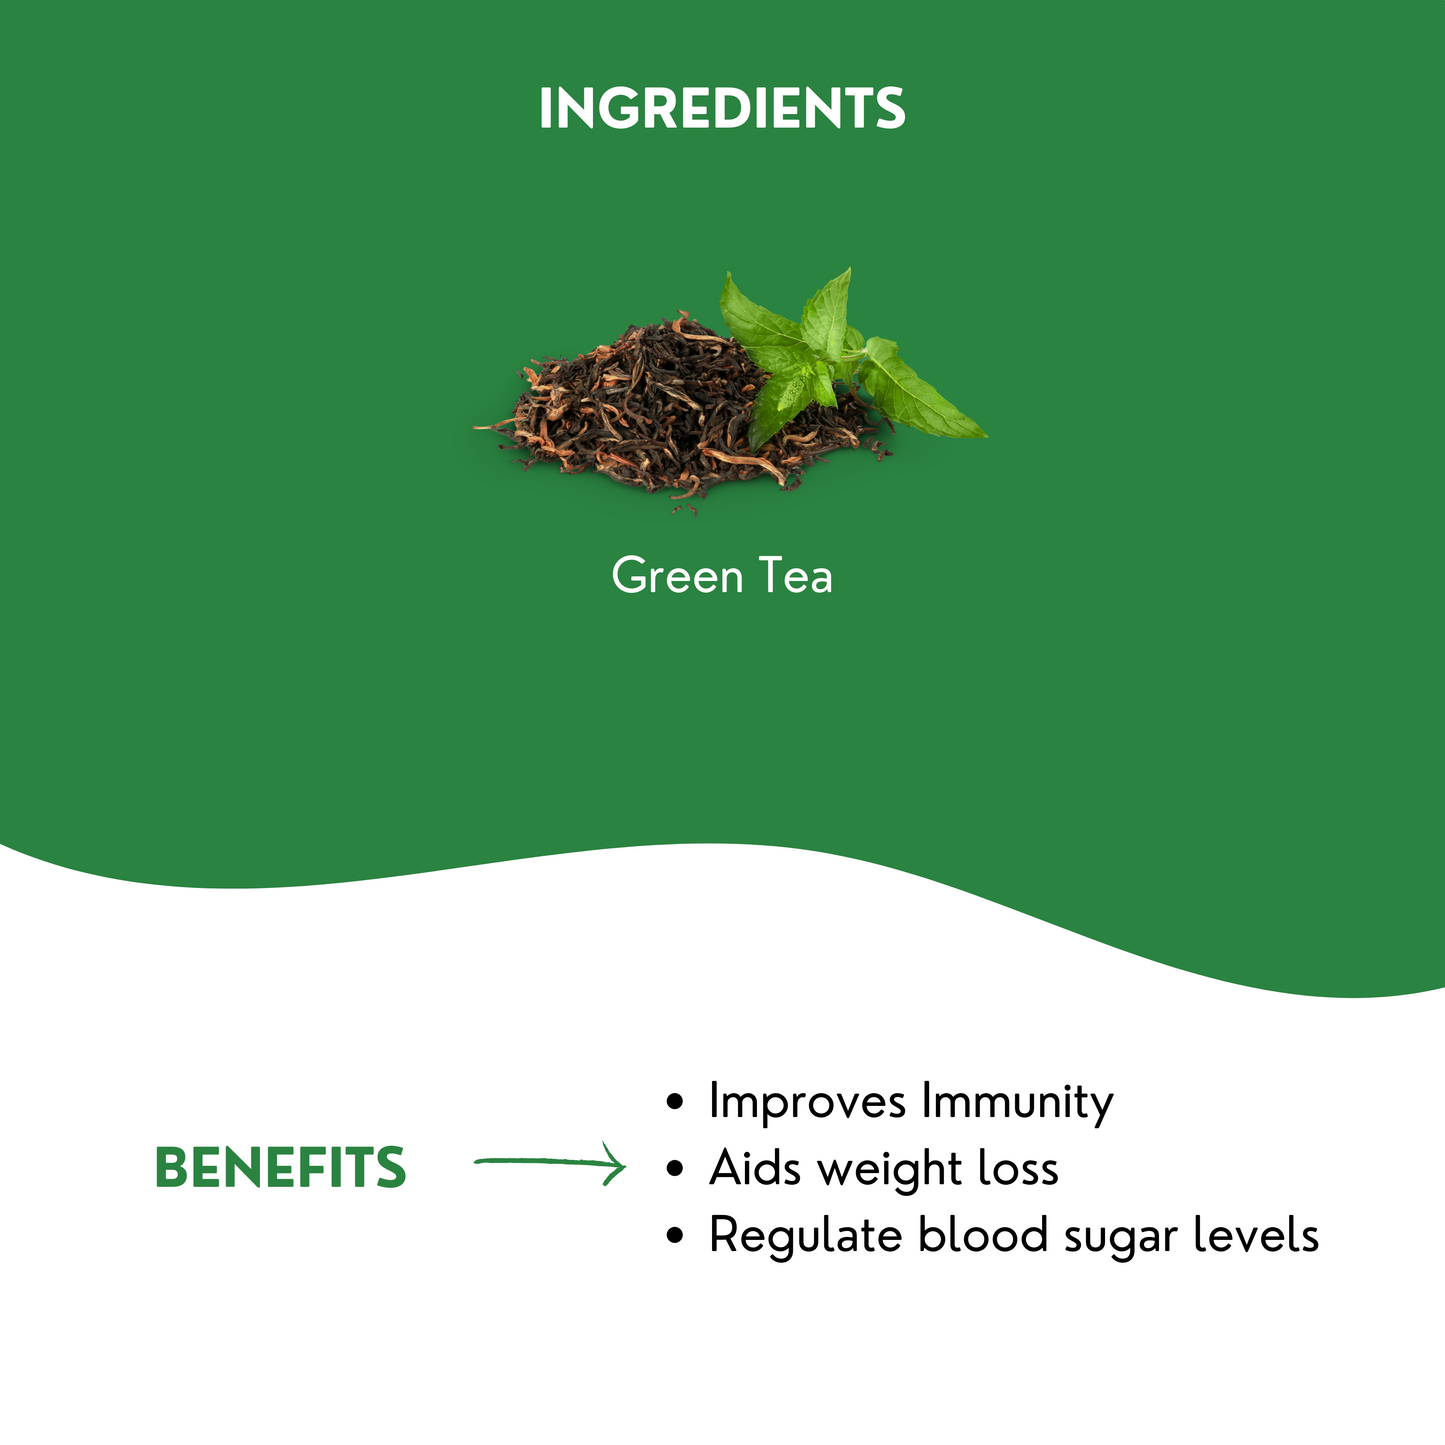 Himalayan Green Tea (Pack of 2) - 30 Pyramid Tea Bags